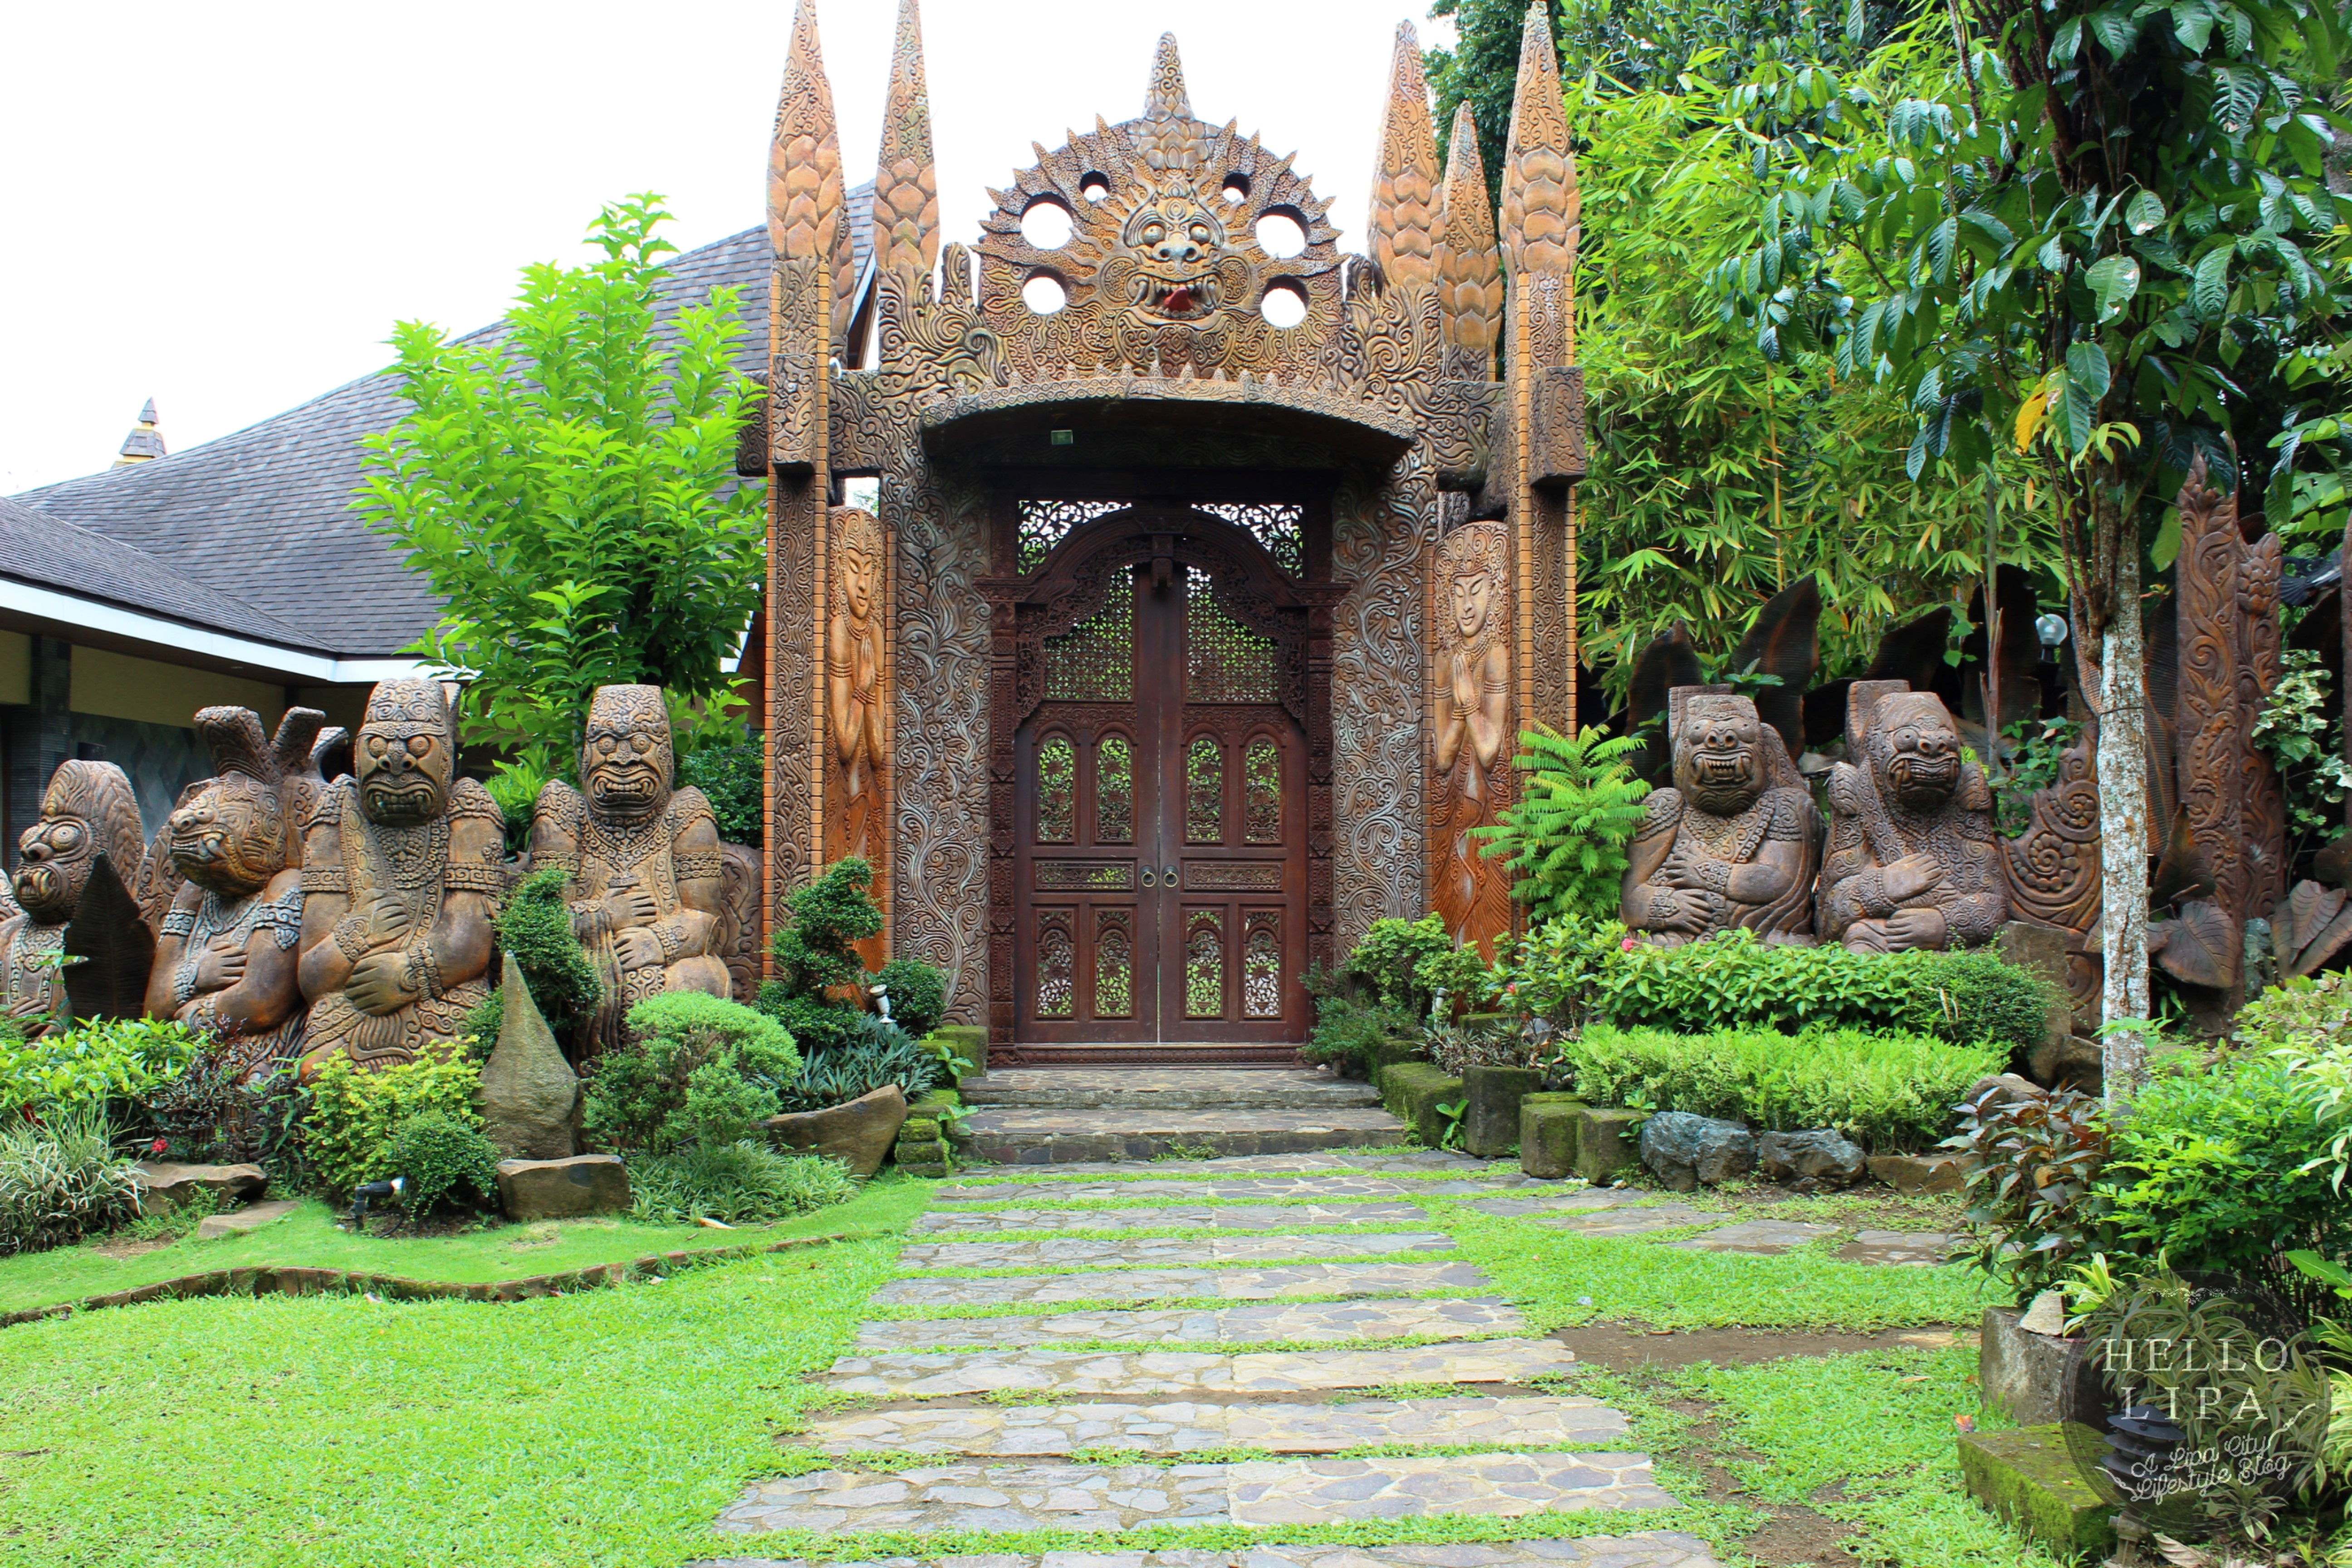 Cintai Corito’s Garden: A Balinese-inspired Sanctuary for Your Weekend Escape